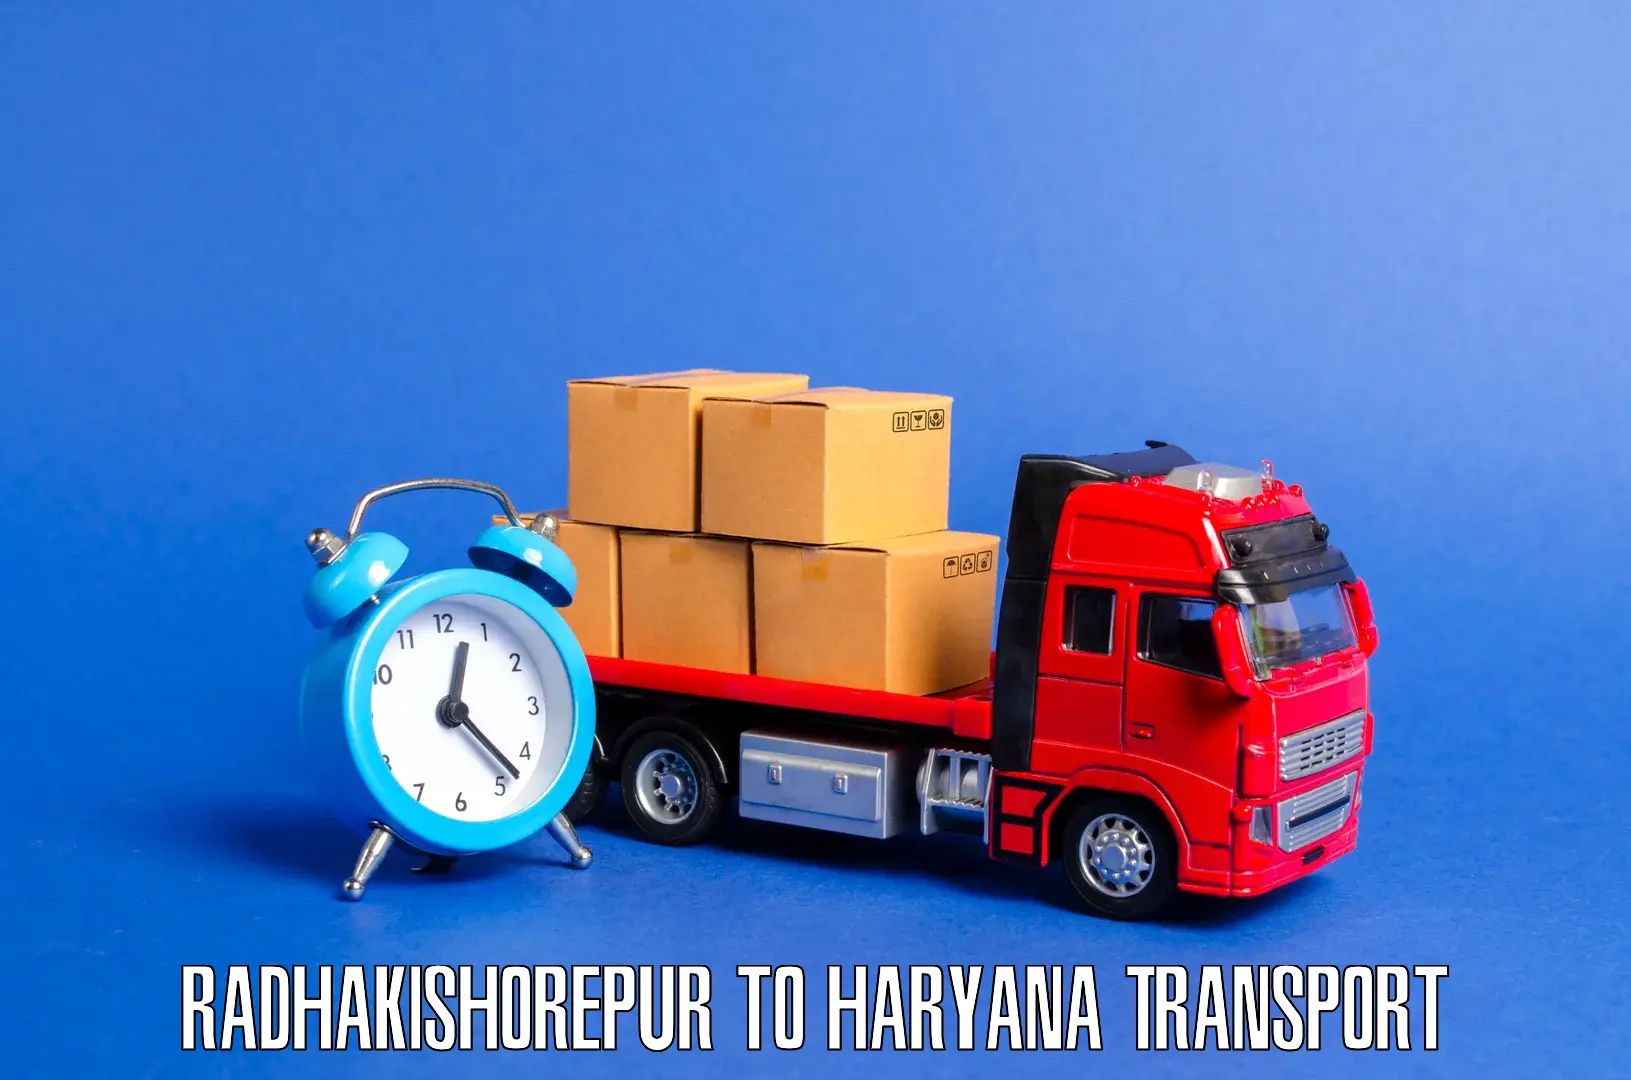 Furniture transport service Radhakishorepur to Odhan